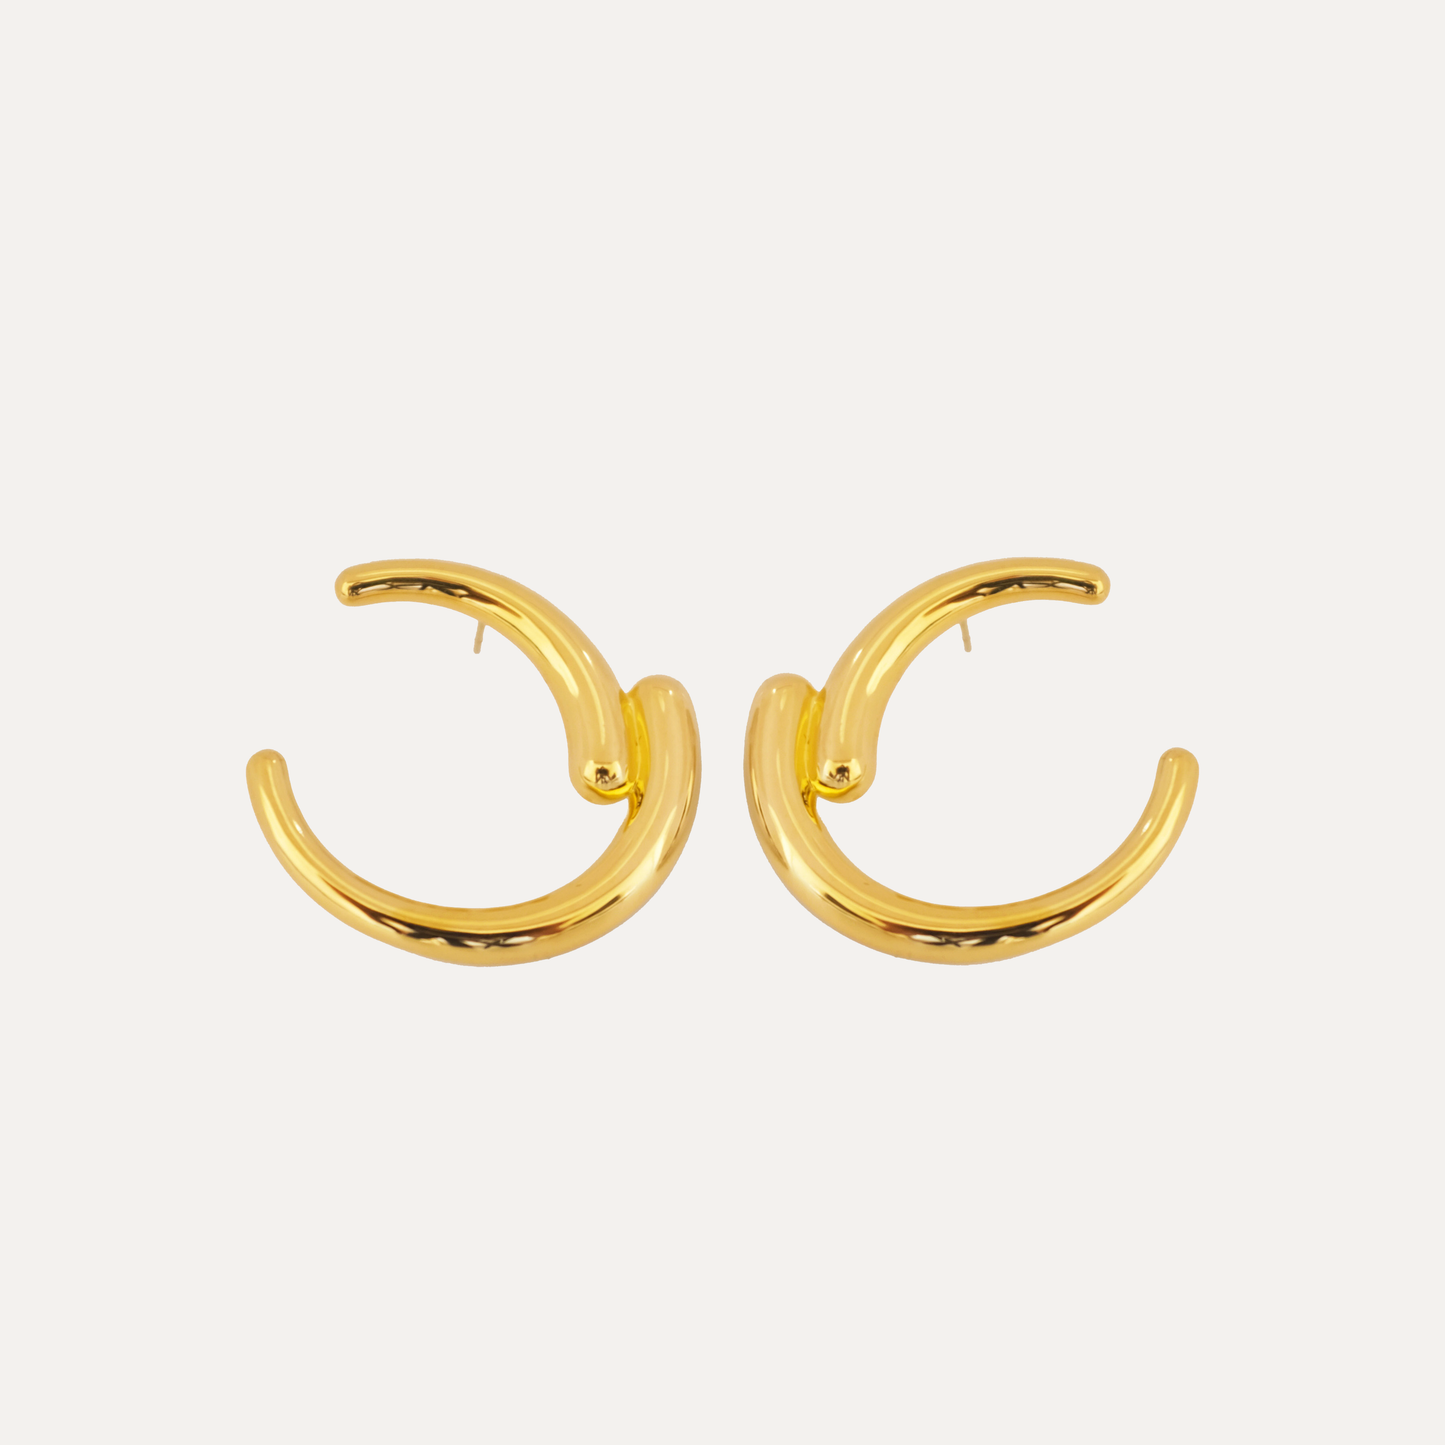 Gold Ülkü Earrings